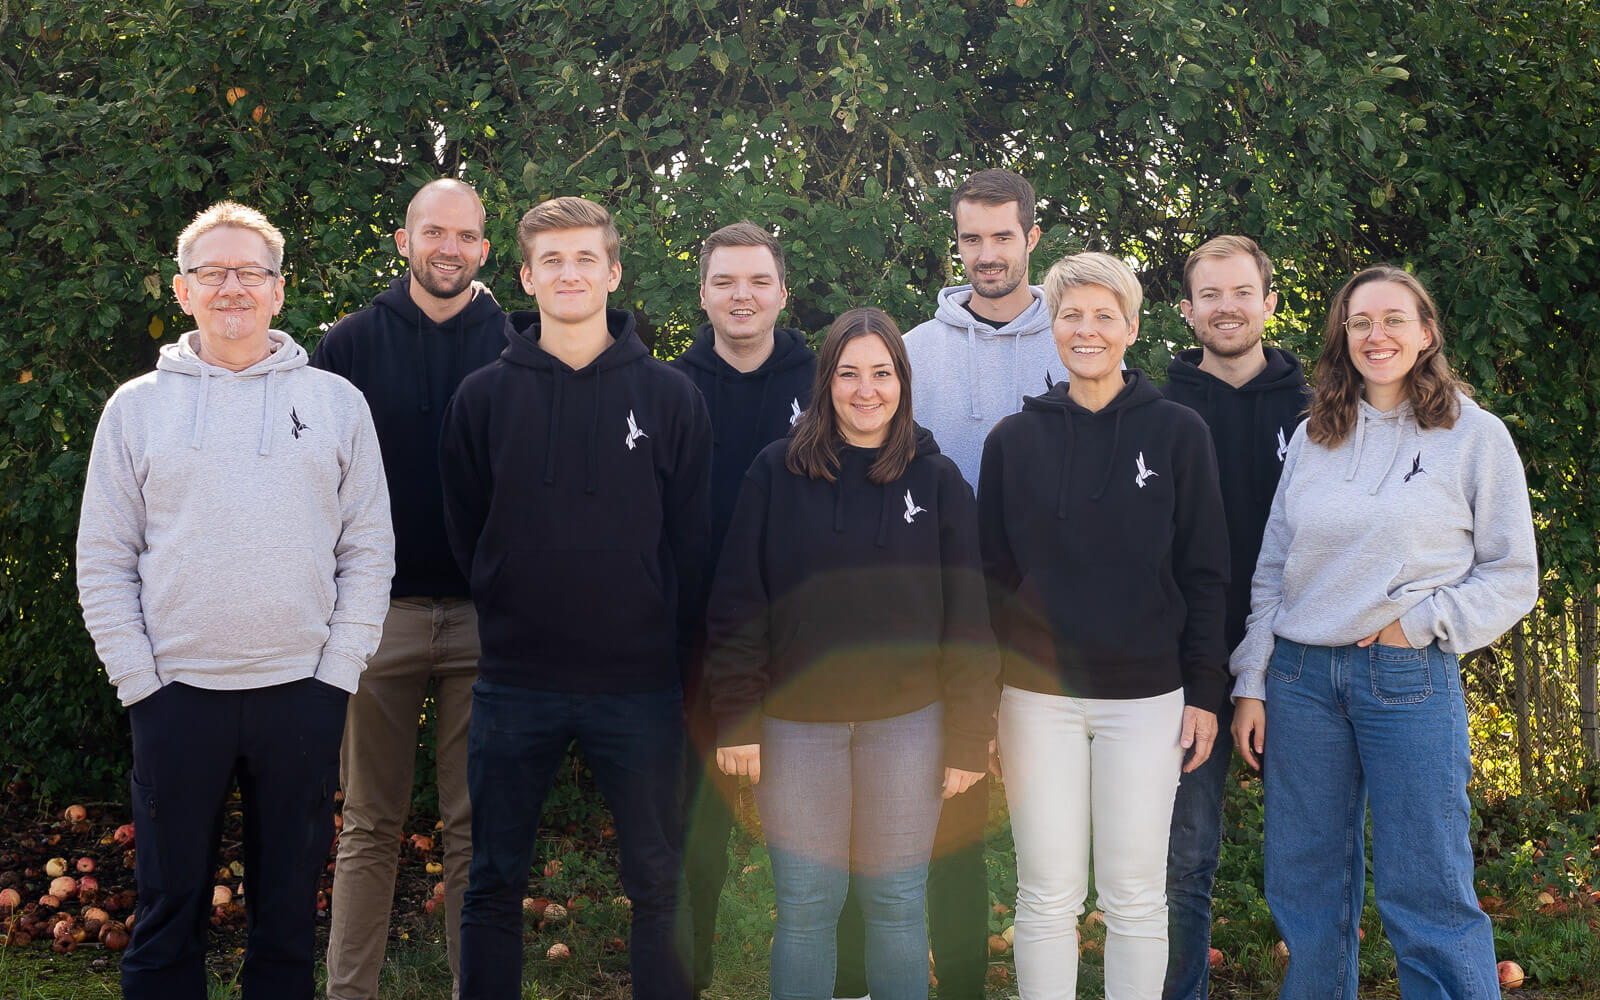 Das sind wir Team Papair Startup aus Hannover